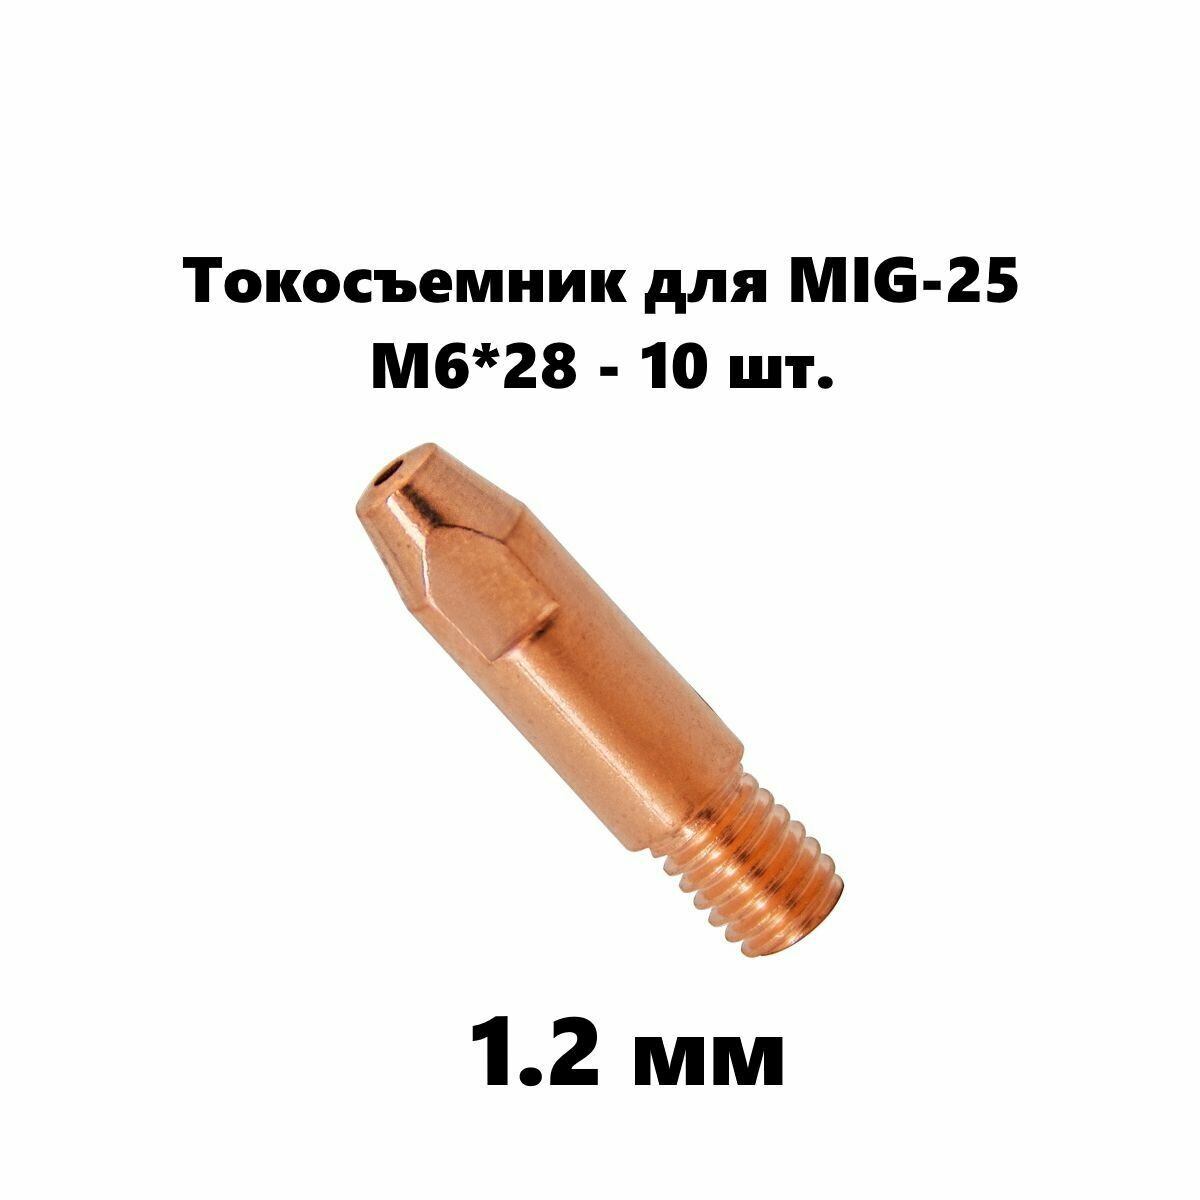 Токовый наконечник M6*28 1.2 мм - 10 шт./ E-Cu / комплект для сварочной горелки серии MIG 25 / 140.0379.10